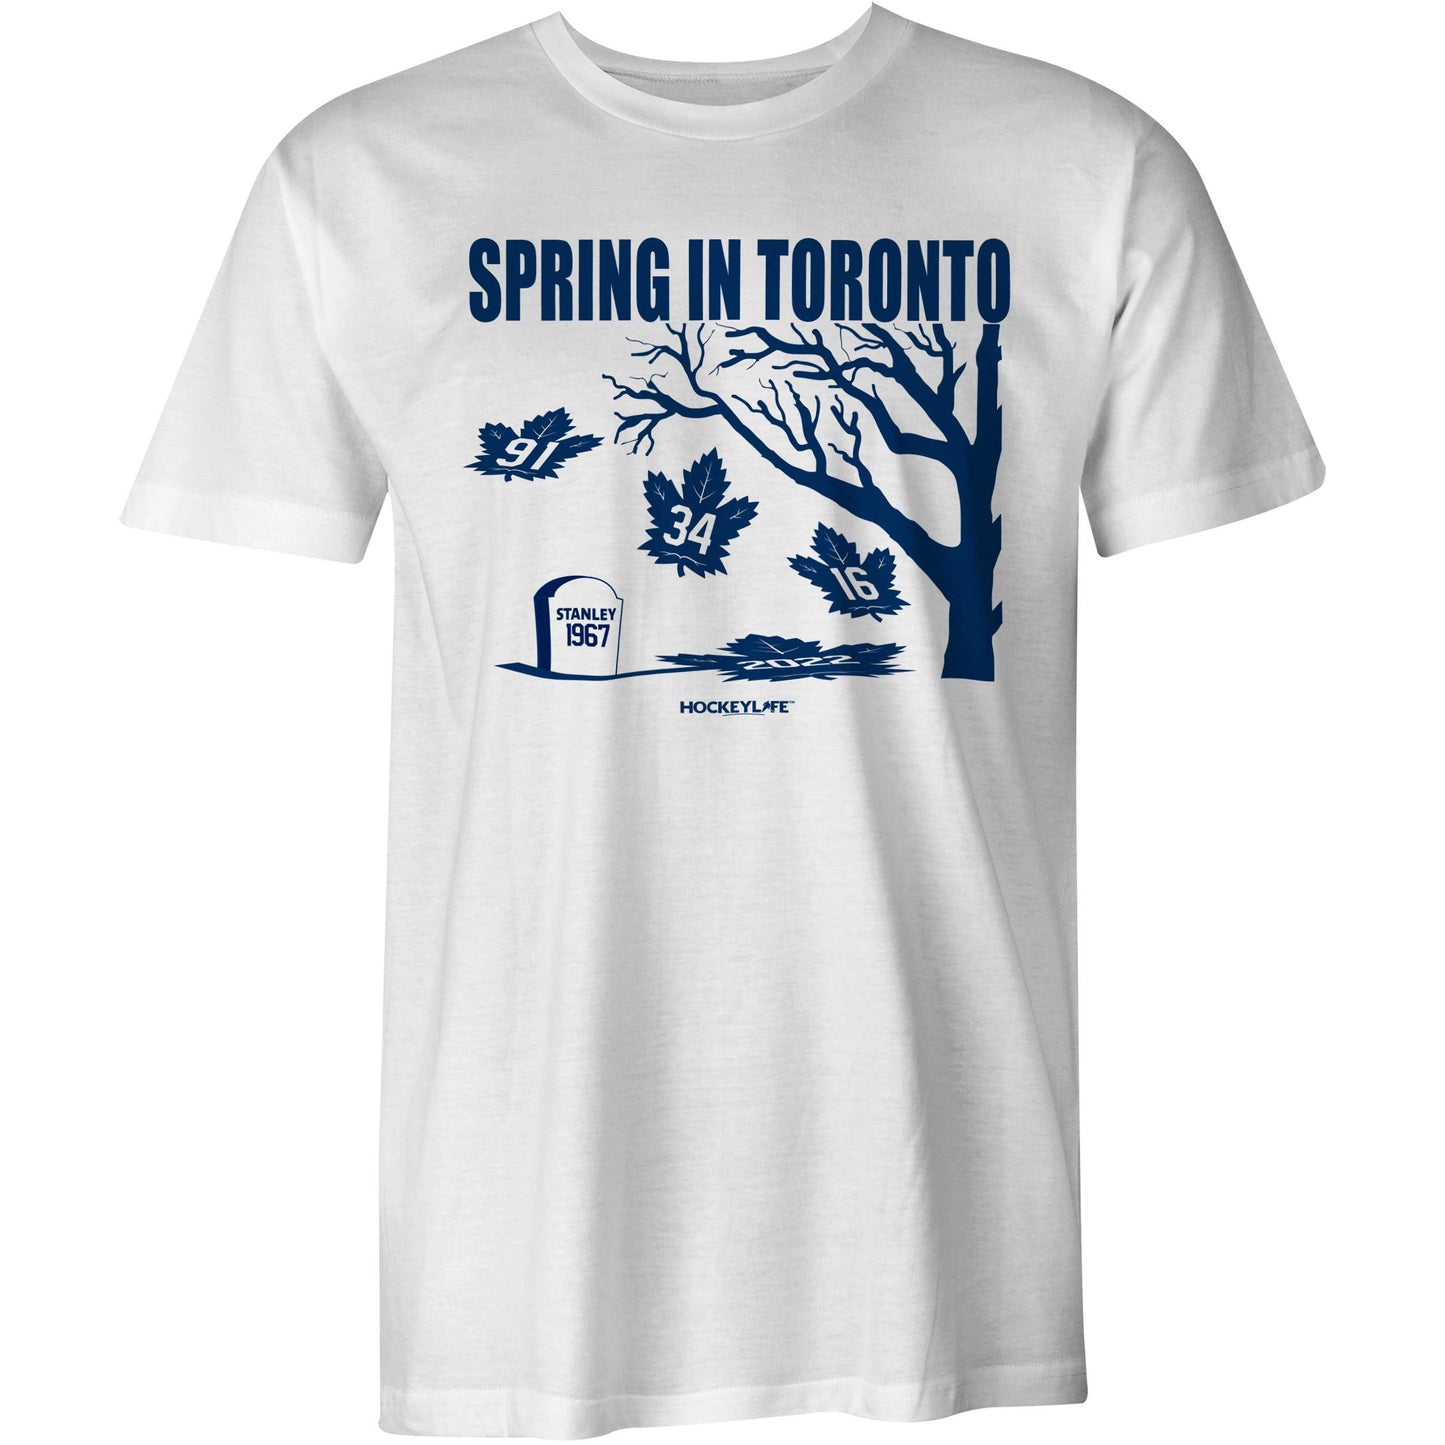 Spring in Toronto Tee Shirt